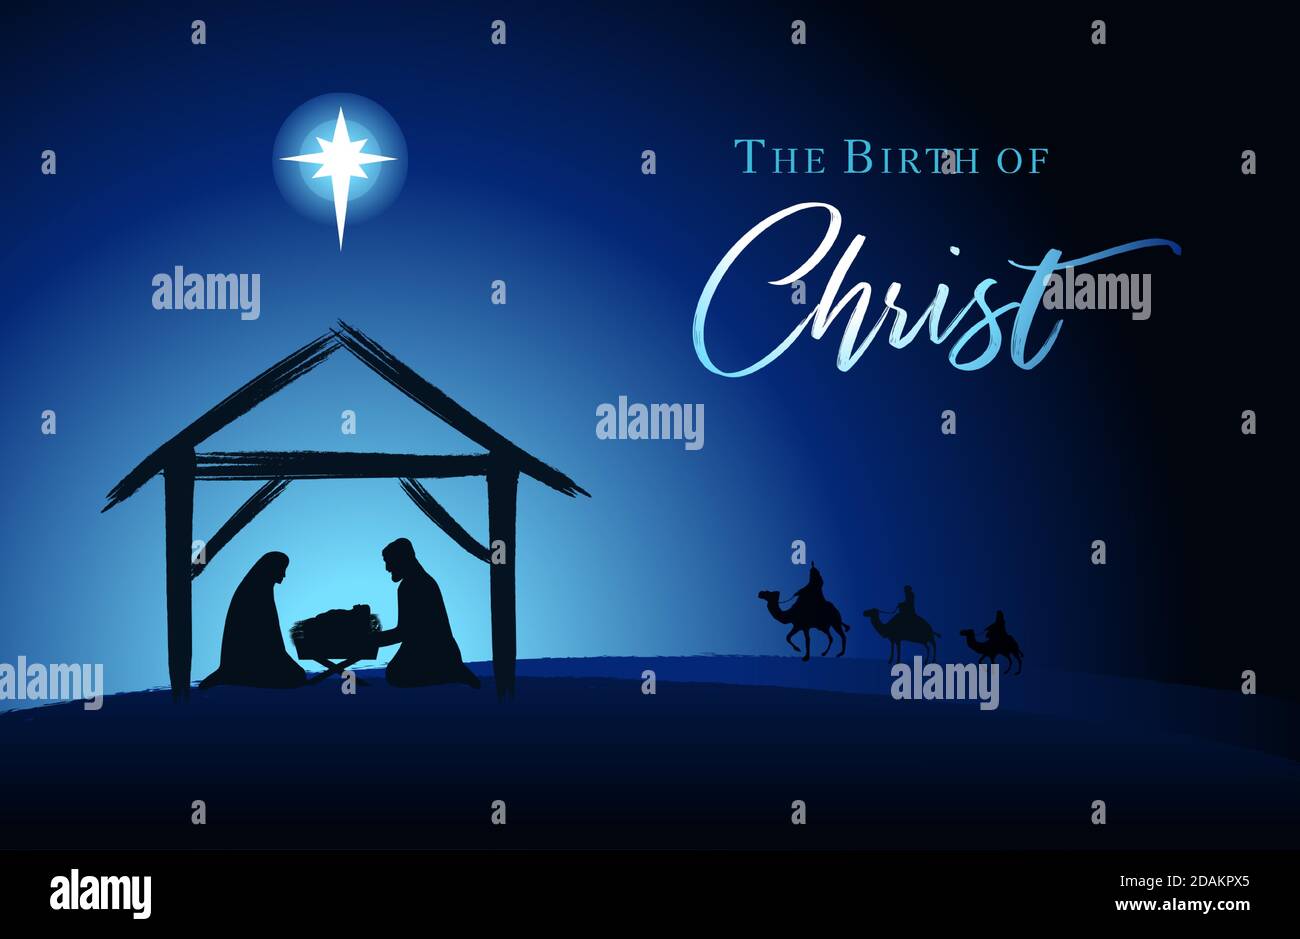 Scène de Noël de bébé Jésus dans la mangeoire avec Marie et Joseph en silhouette, étoile de Bethléem et trois rois sur chameaux. Nativité chrétienne avec texte Illustration de Vecteur